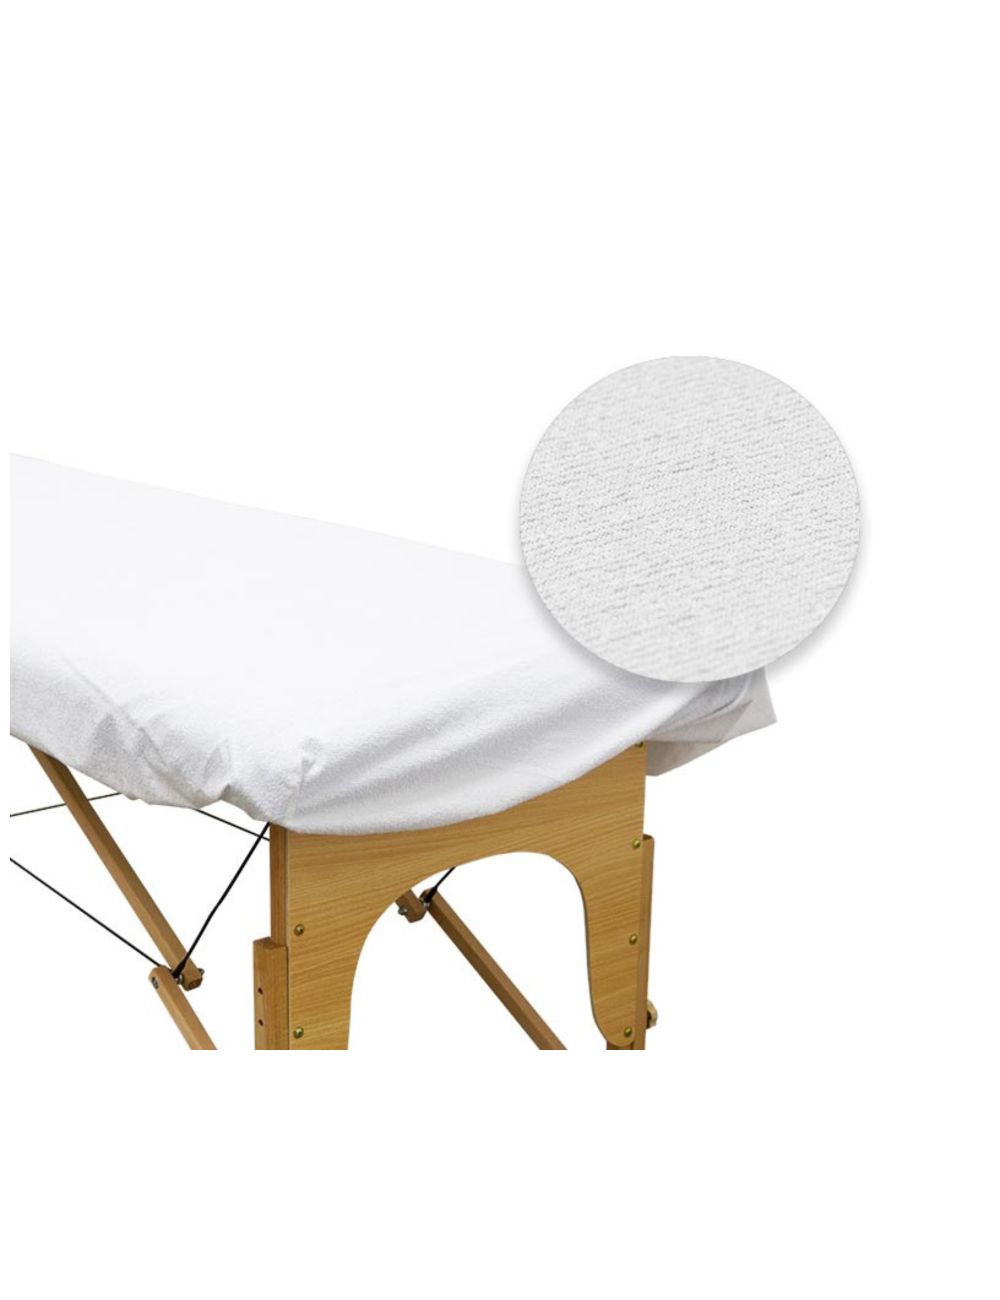 Housse pour table de massage - Imperméable et respirante